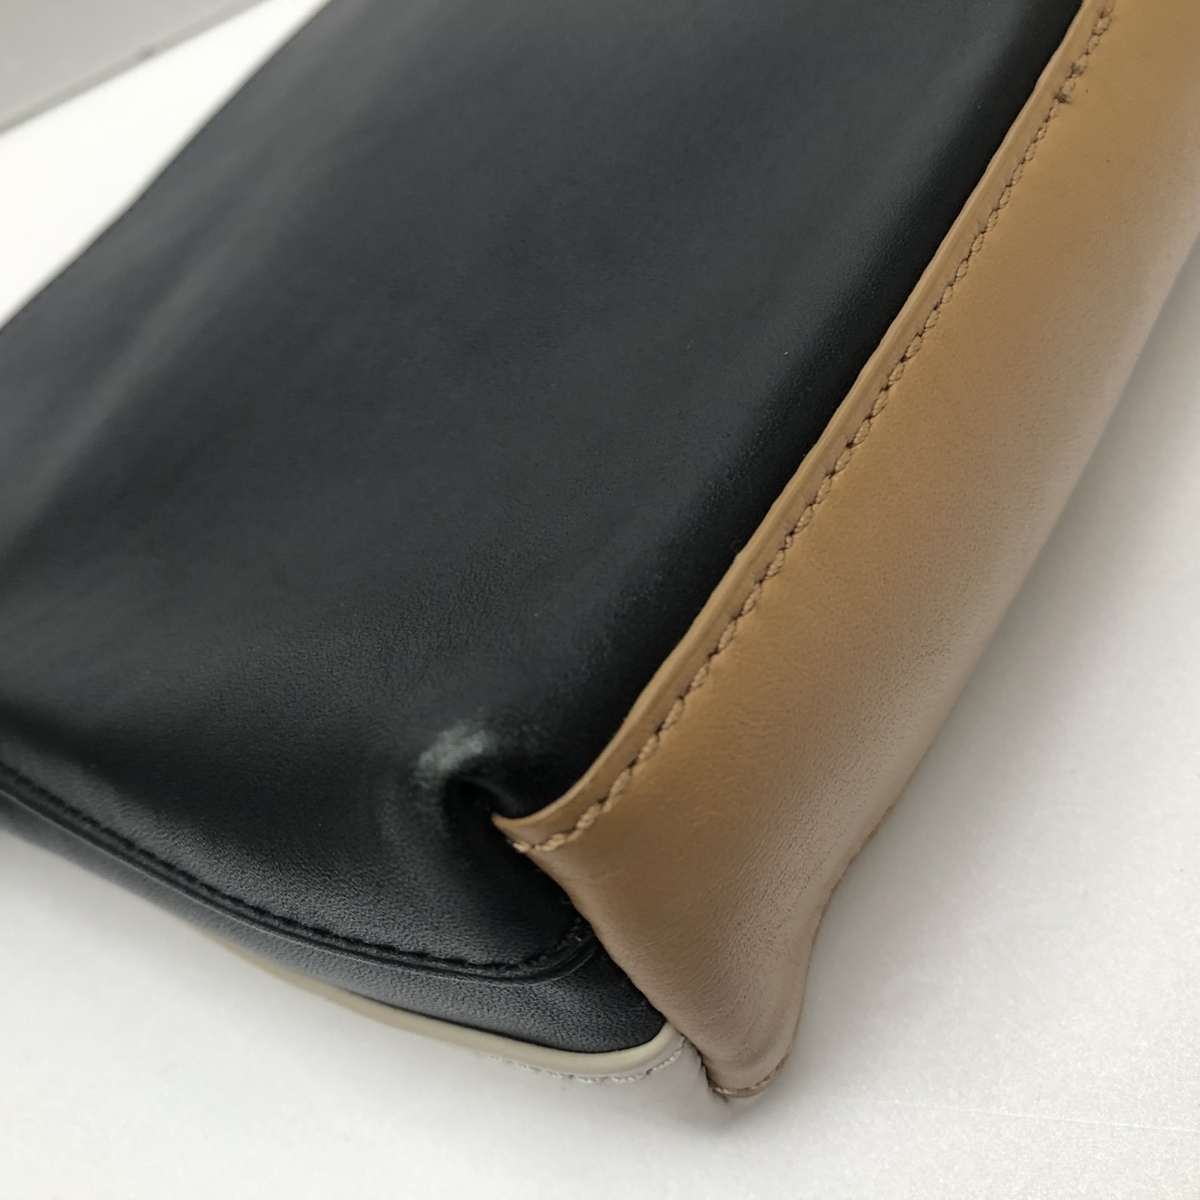 *3.1 Phillip Lim 3.1 Philip rim bai color white × black leather second bag pouch /T09000